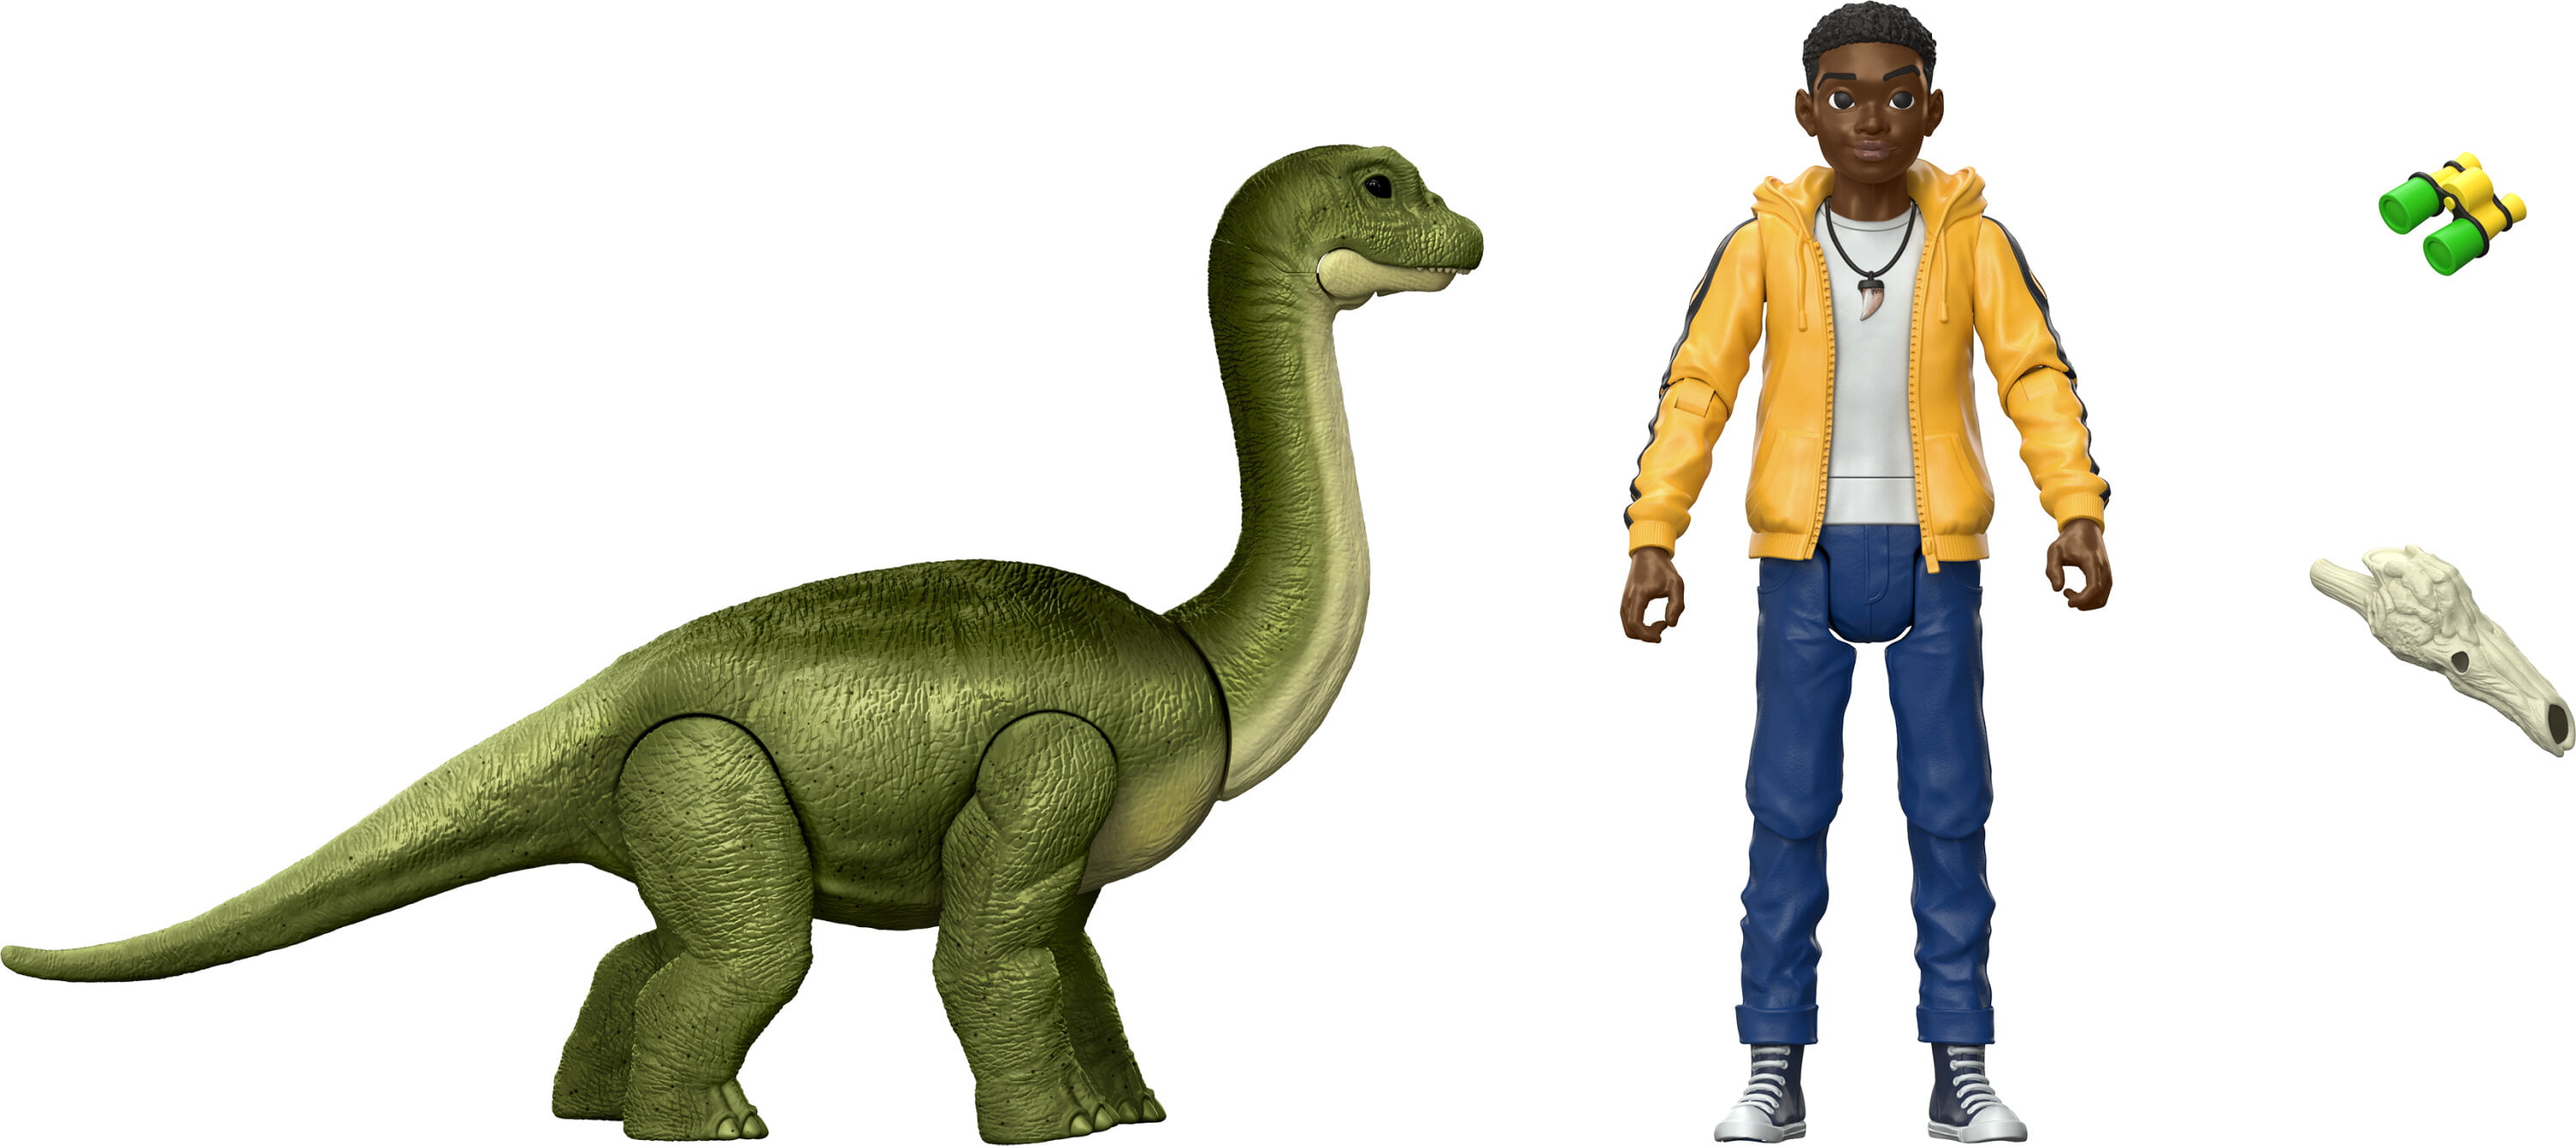 Дино и человек. Брахиозавр игрушка мир Юрского периода. Игрушка мир Юрского периода Брахиозавр Маттел. Динозавры и люди. Дино человек.